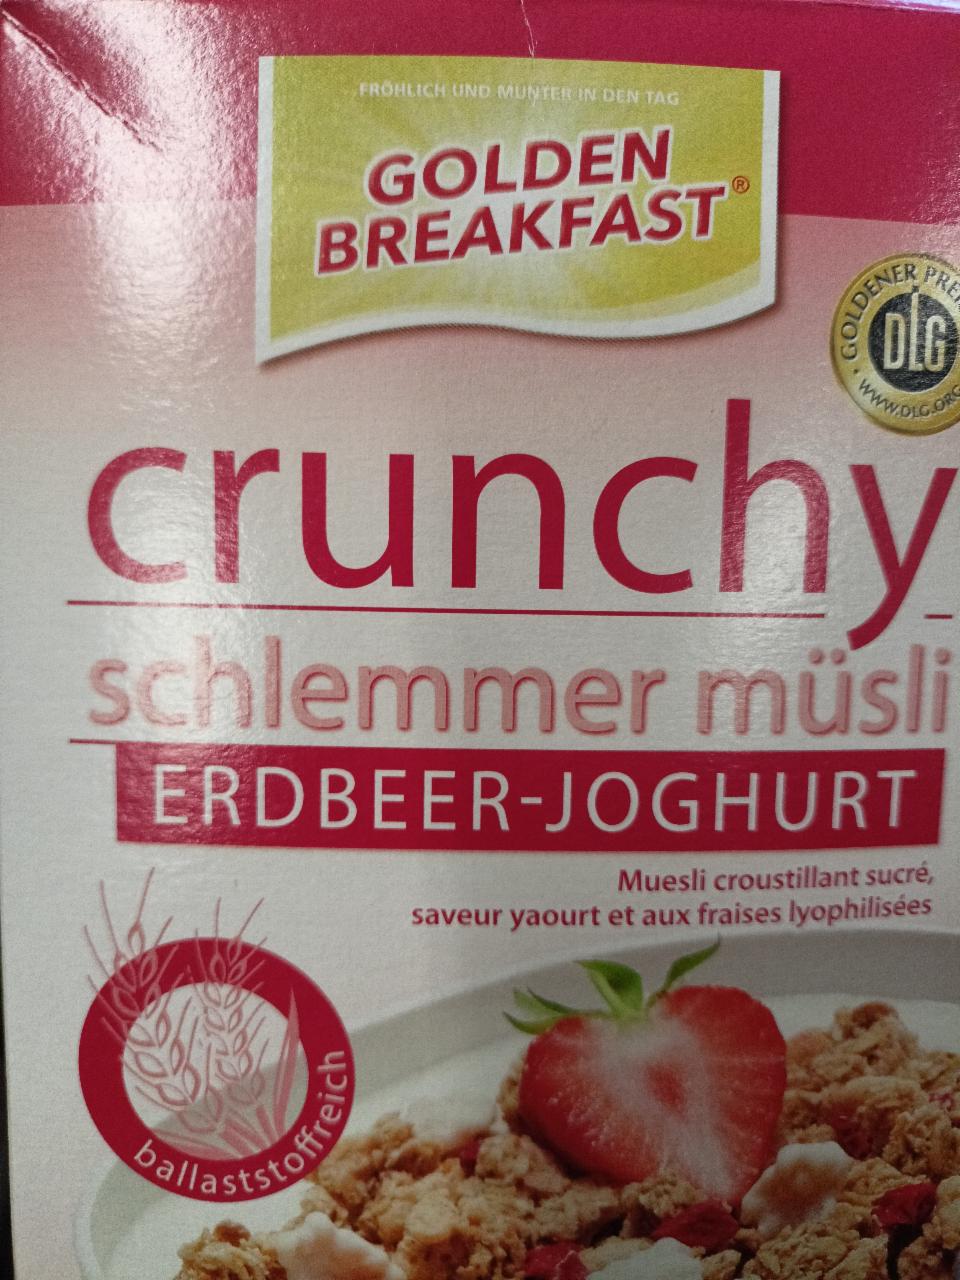 Fotografie - Crunchy schlemmer müsli erdbeer joghurt Golden Breakfast